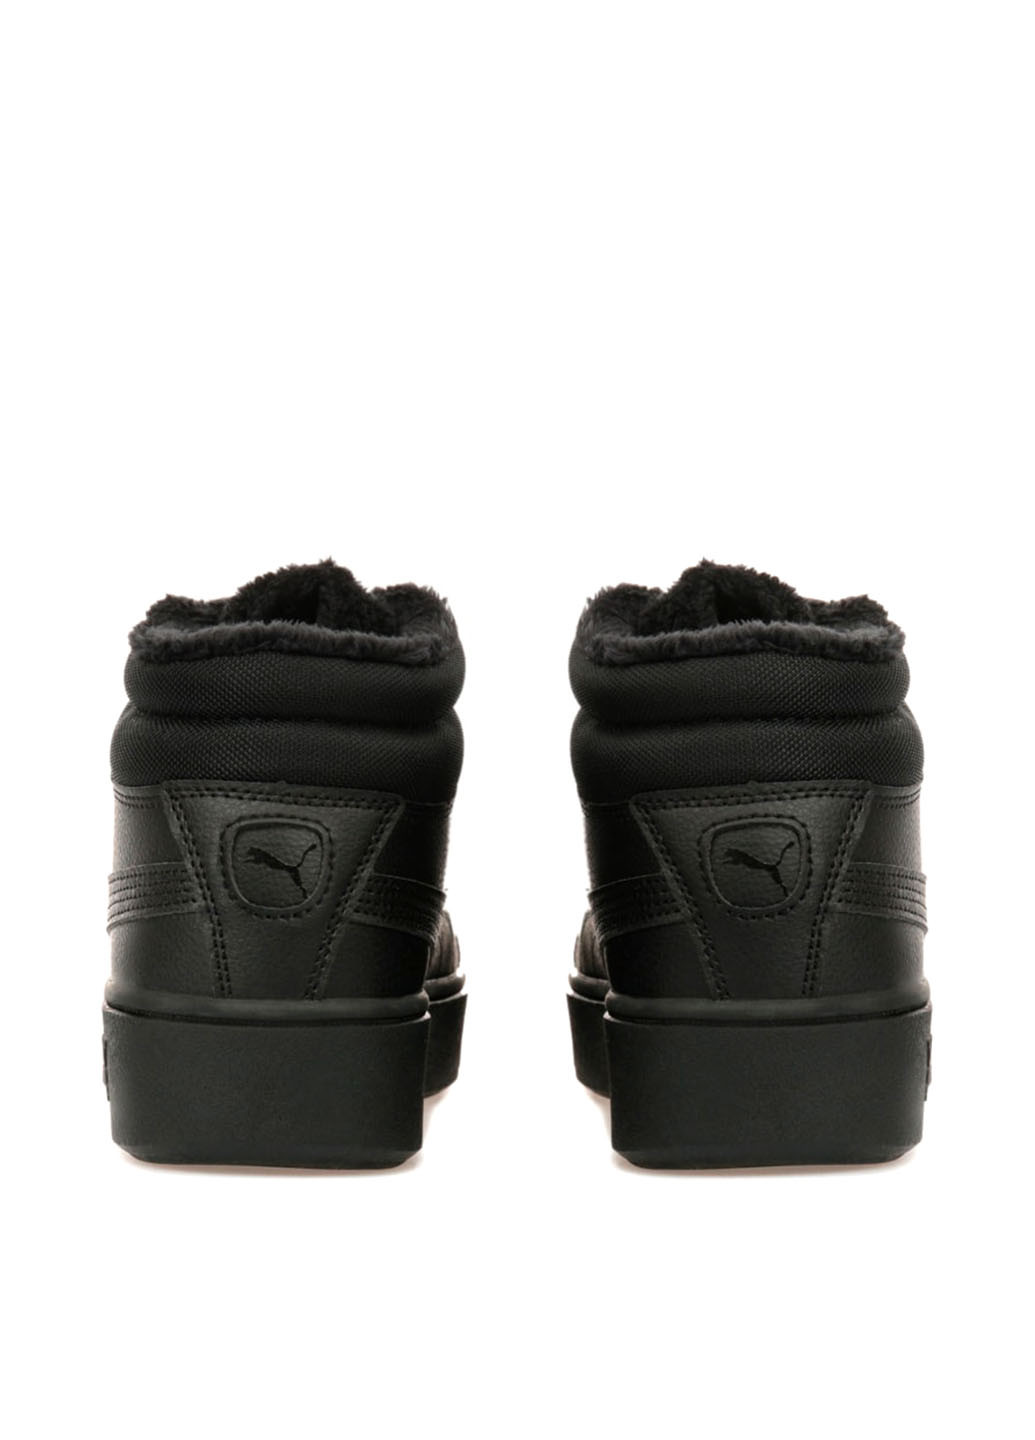 Ботинки Puma логотипы чёрные спортивные